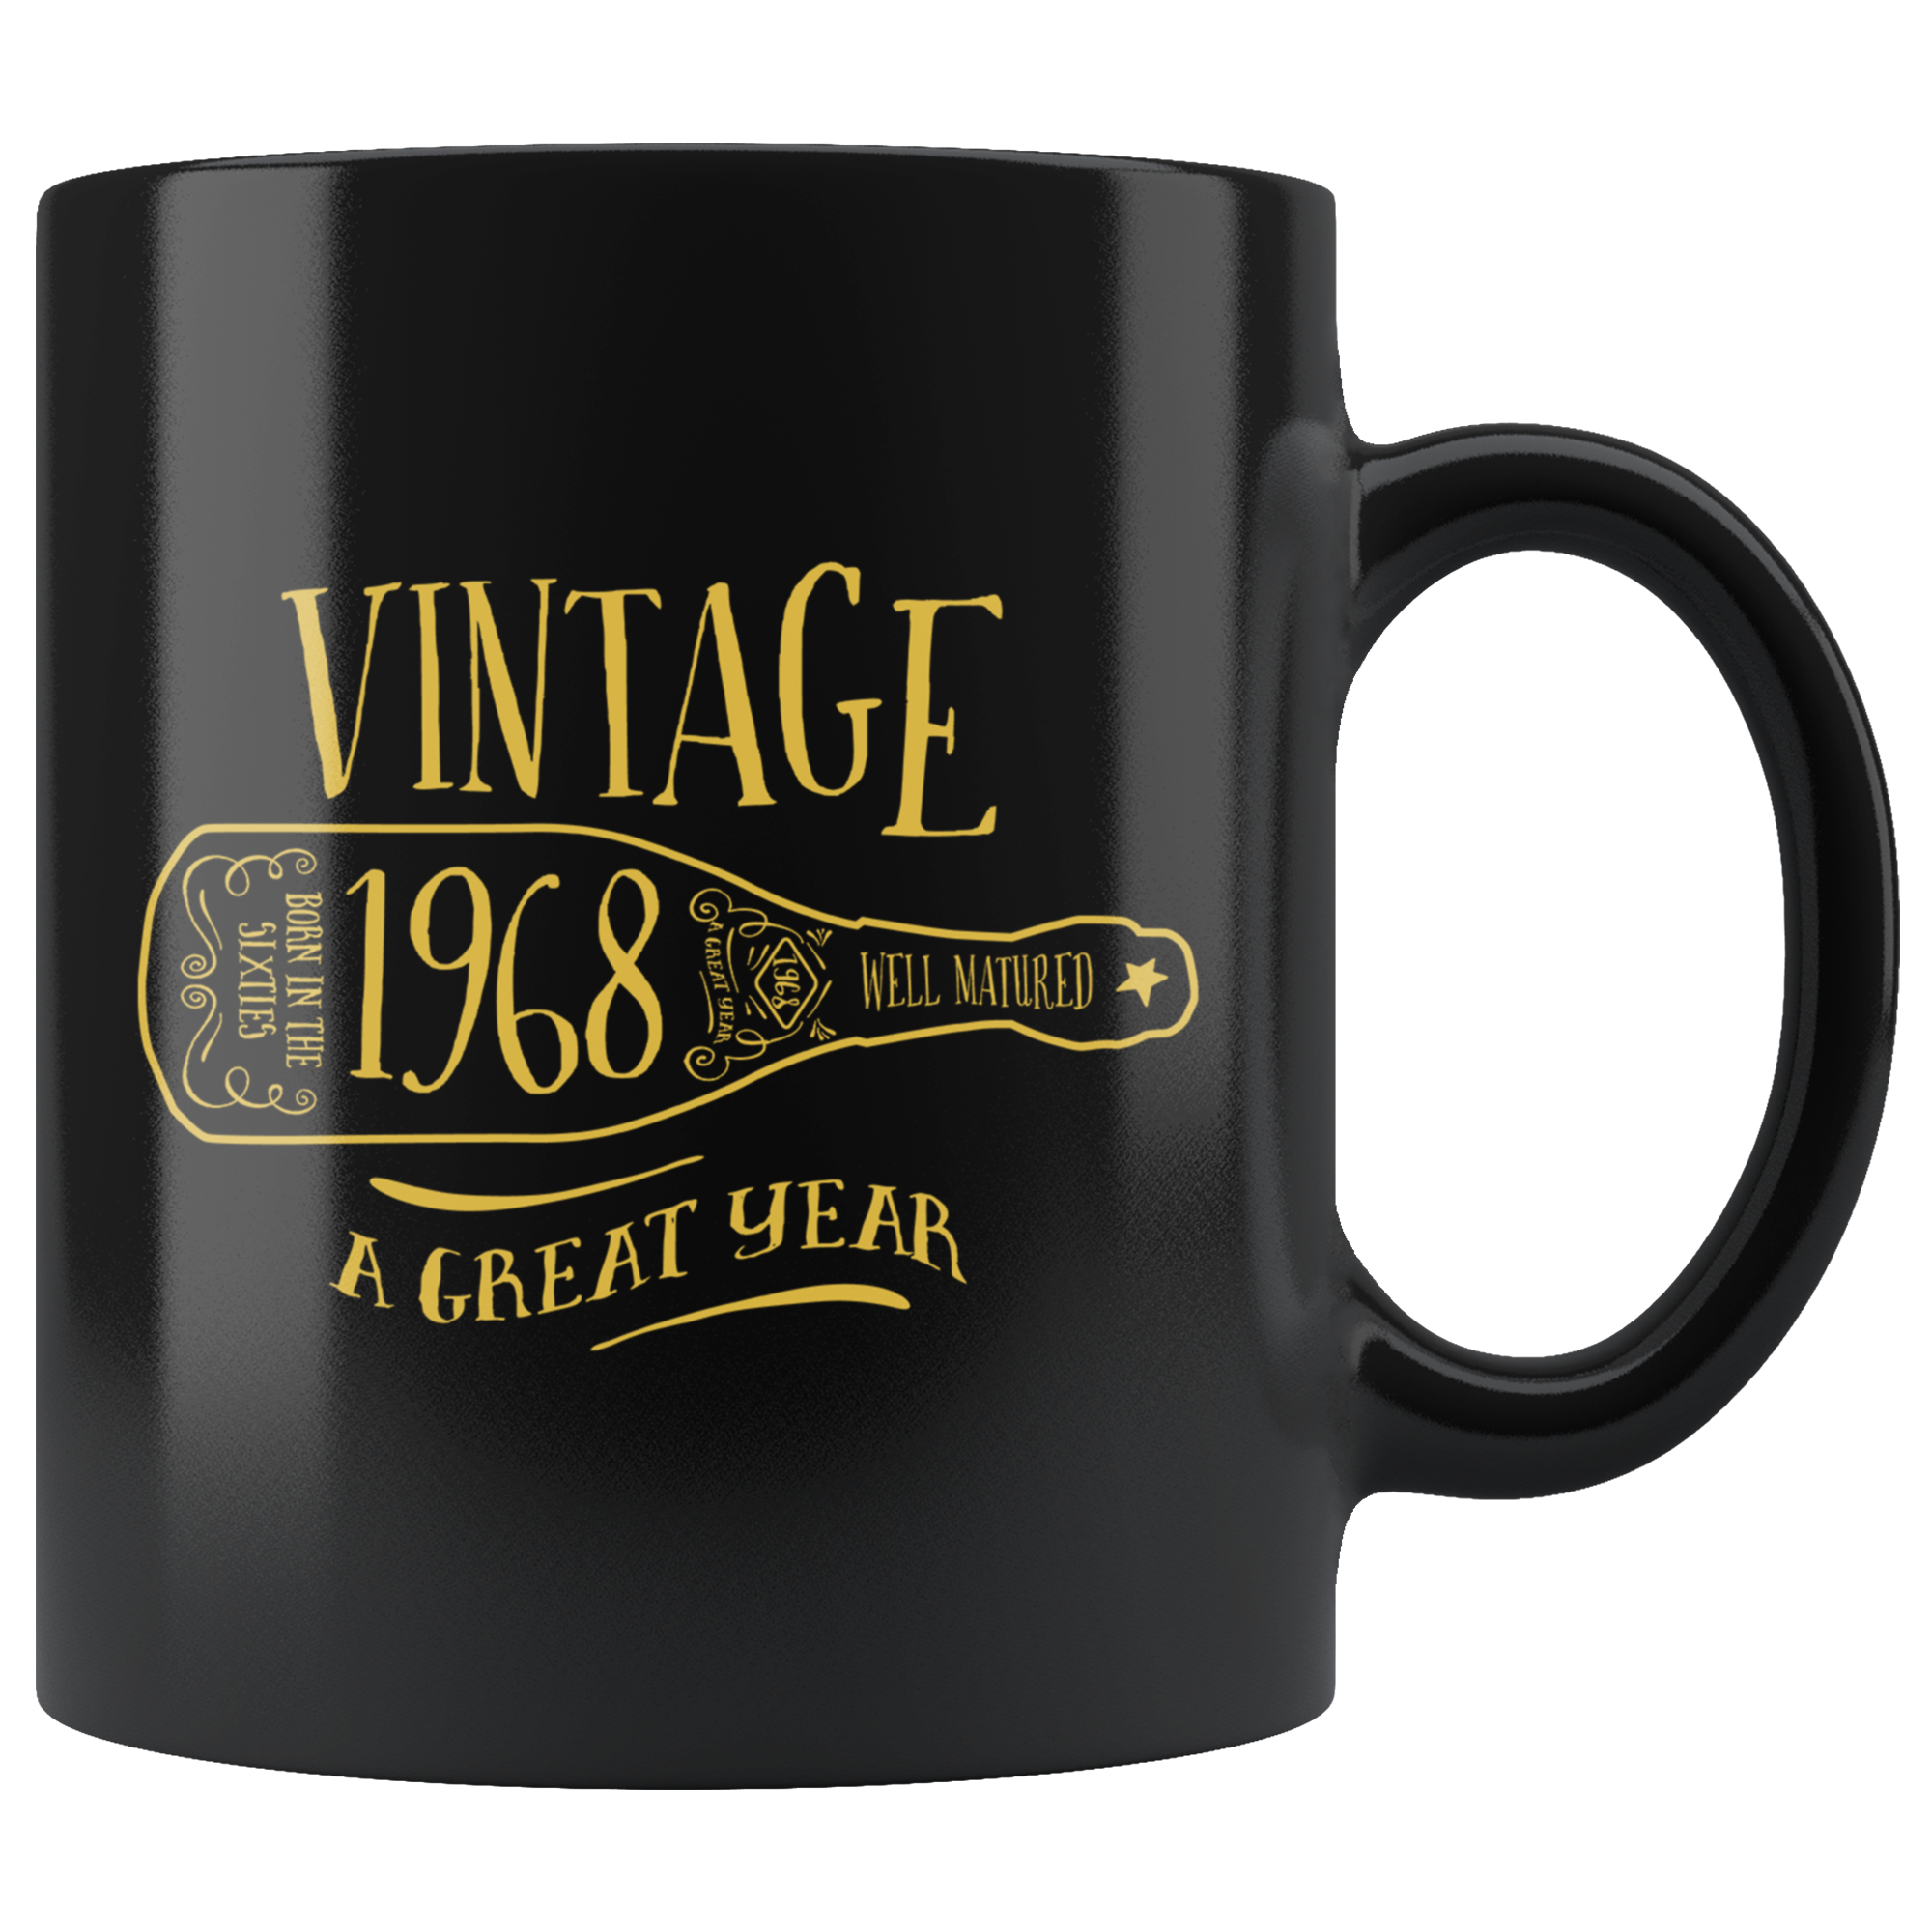 Vintage 1968 - Black Mug